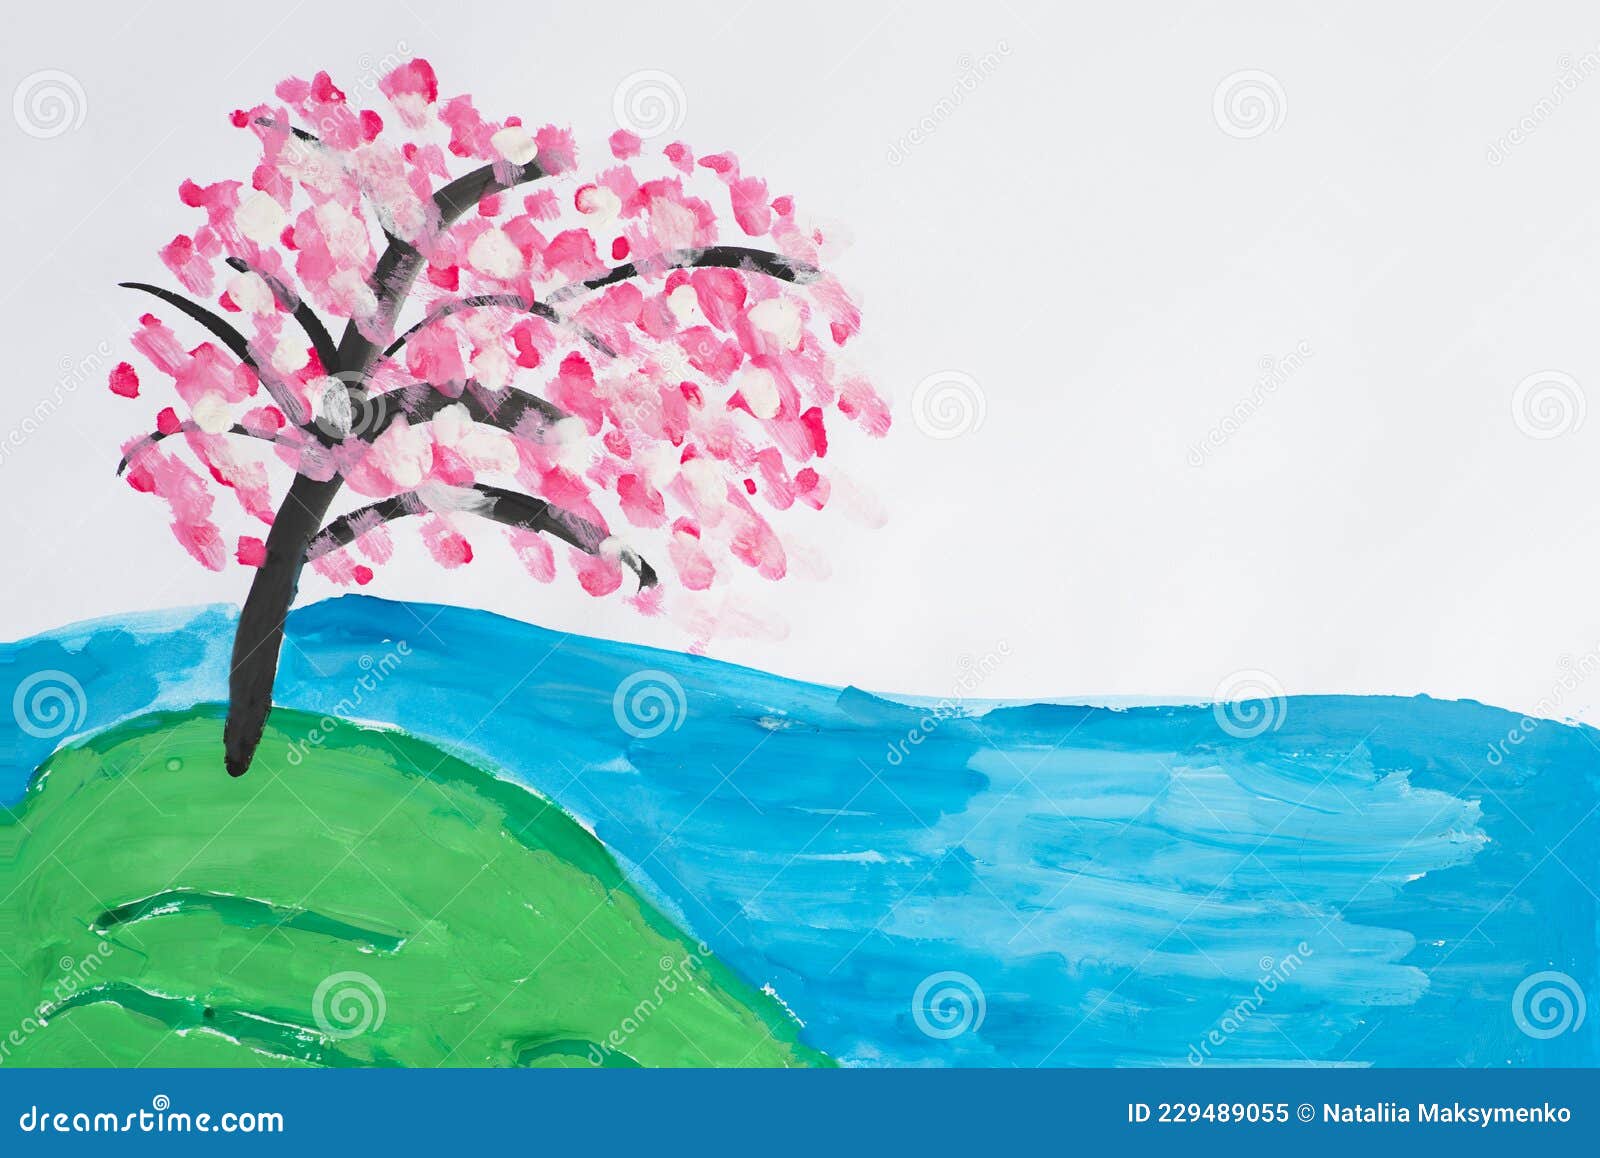 Dibujo De Niños De Sakura En El Paisaje De La Ribera Del Río Con Un árbol  Floreciente Y Un Lago De Manera Abstracta Y Expresiva Stock de ilustración  - Ilustración de noche,